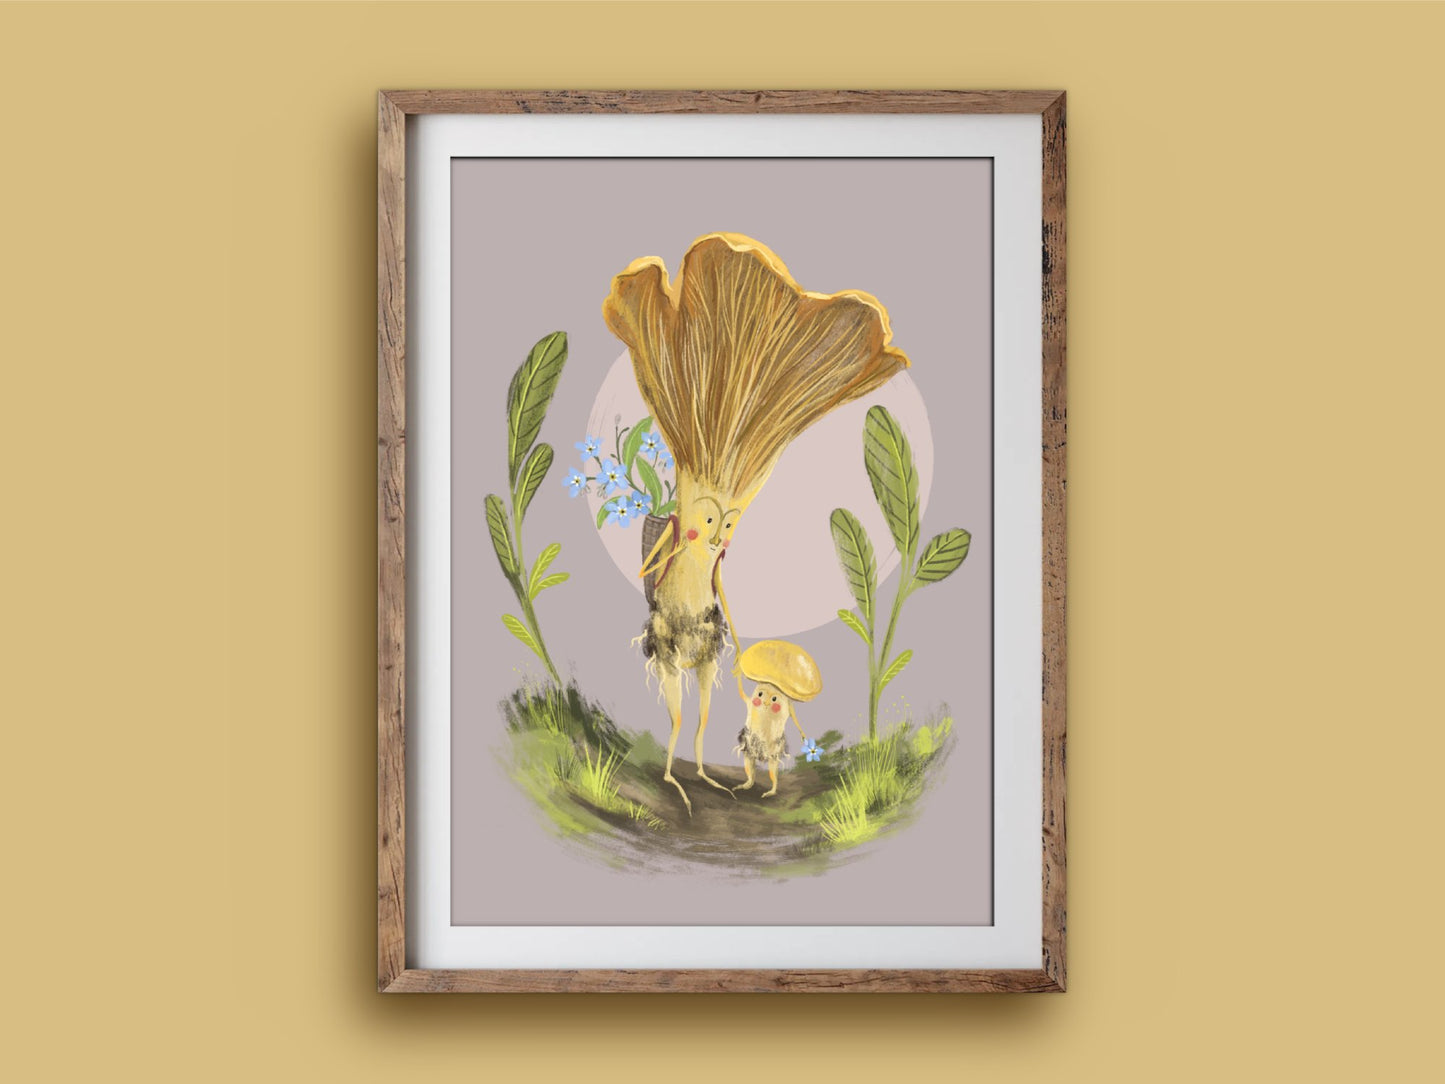 Anna Seed Art | Art Print - Mushroom Mama - Whimsical illustration, wall art